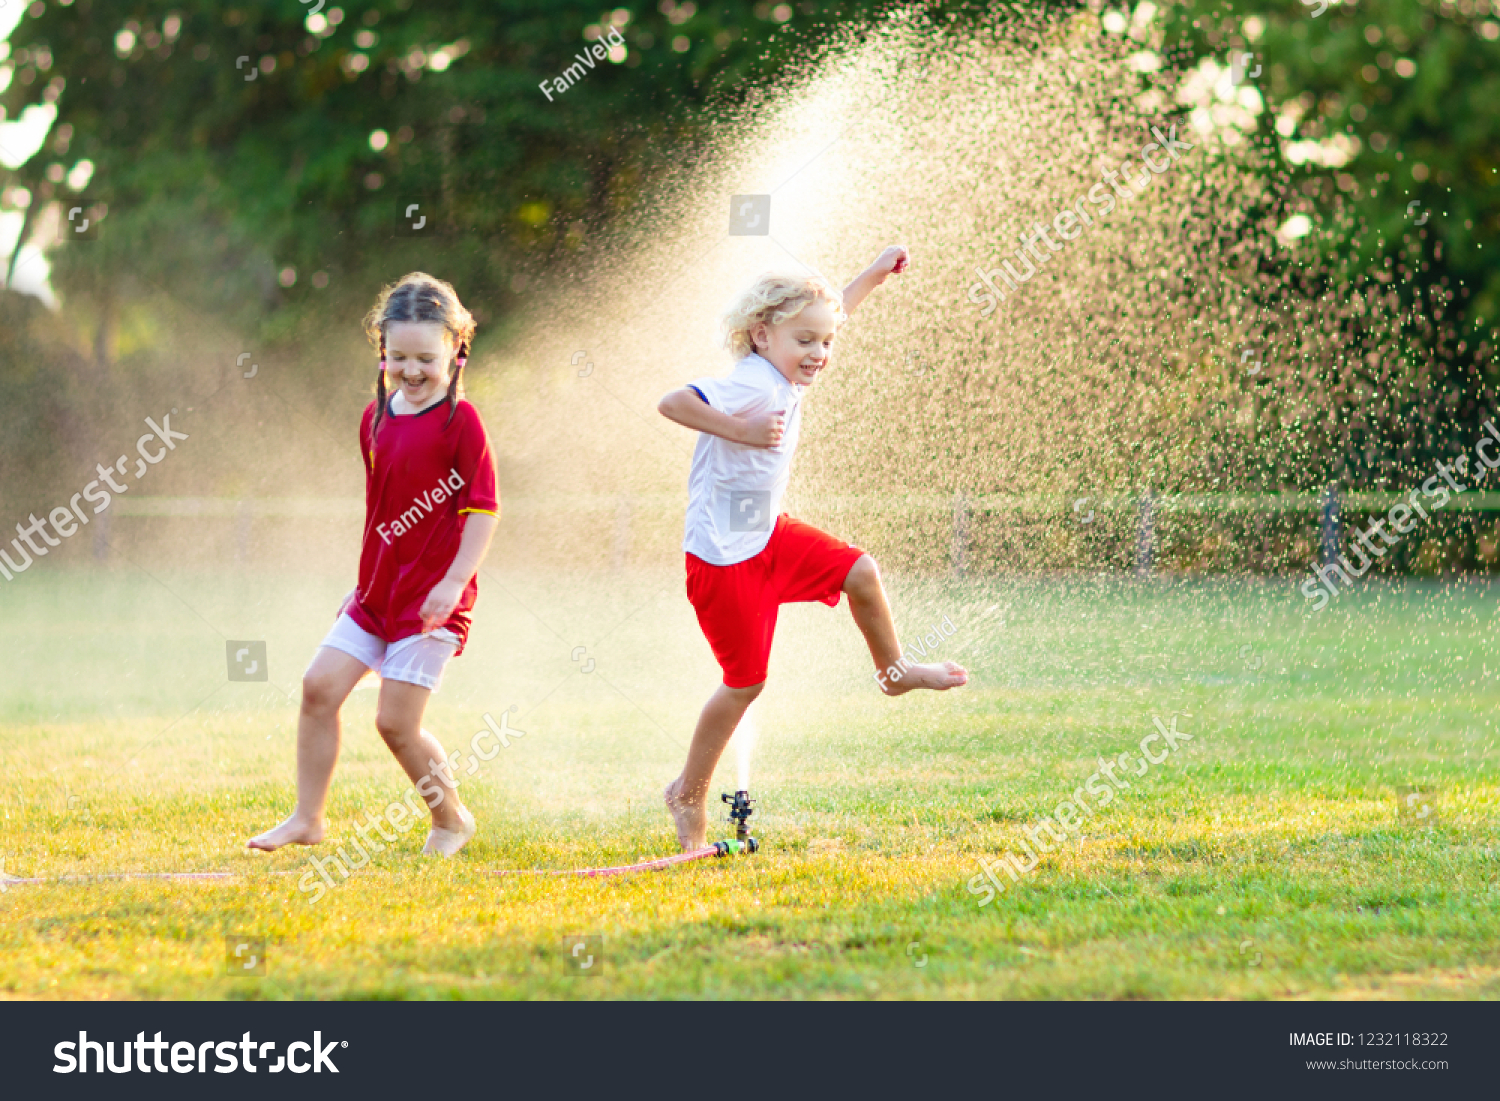 kids garden sprinkler